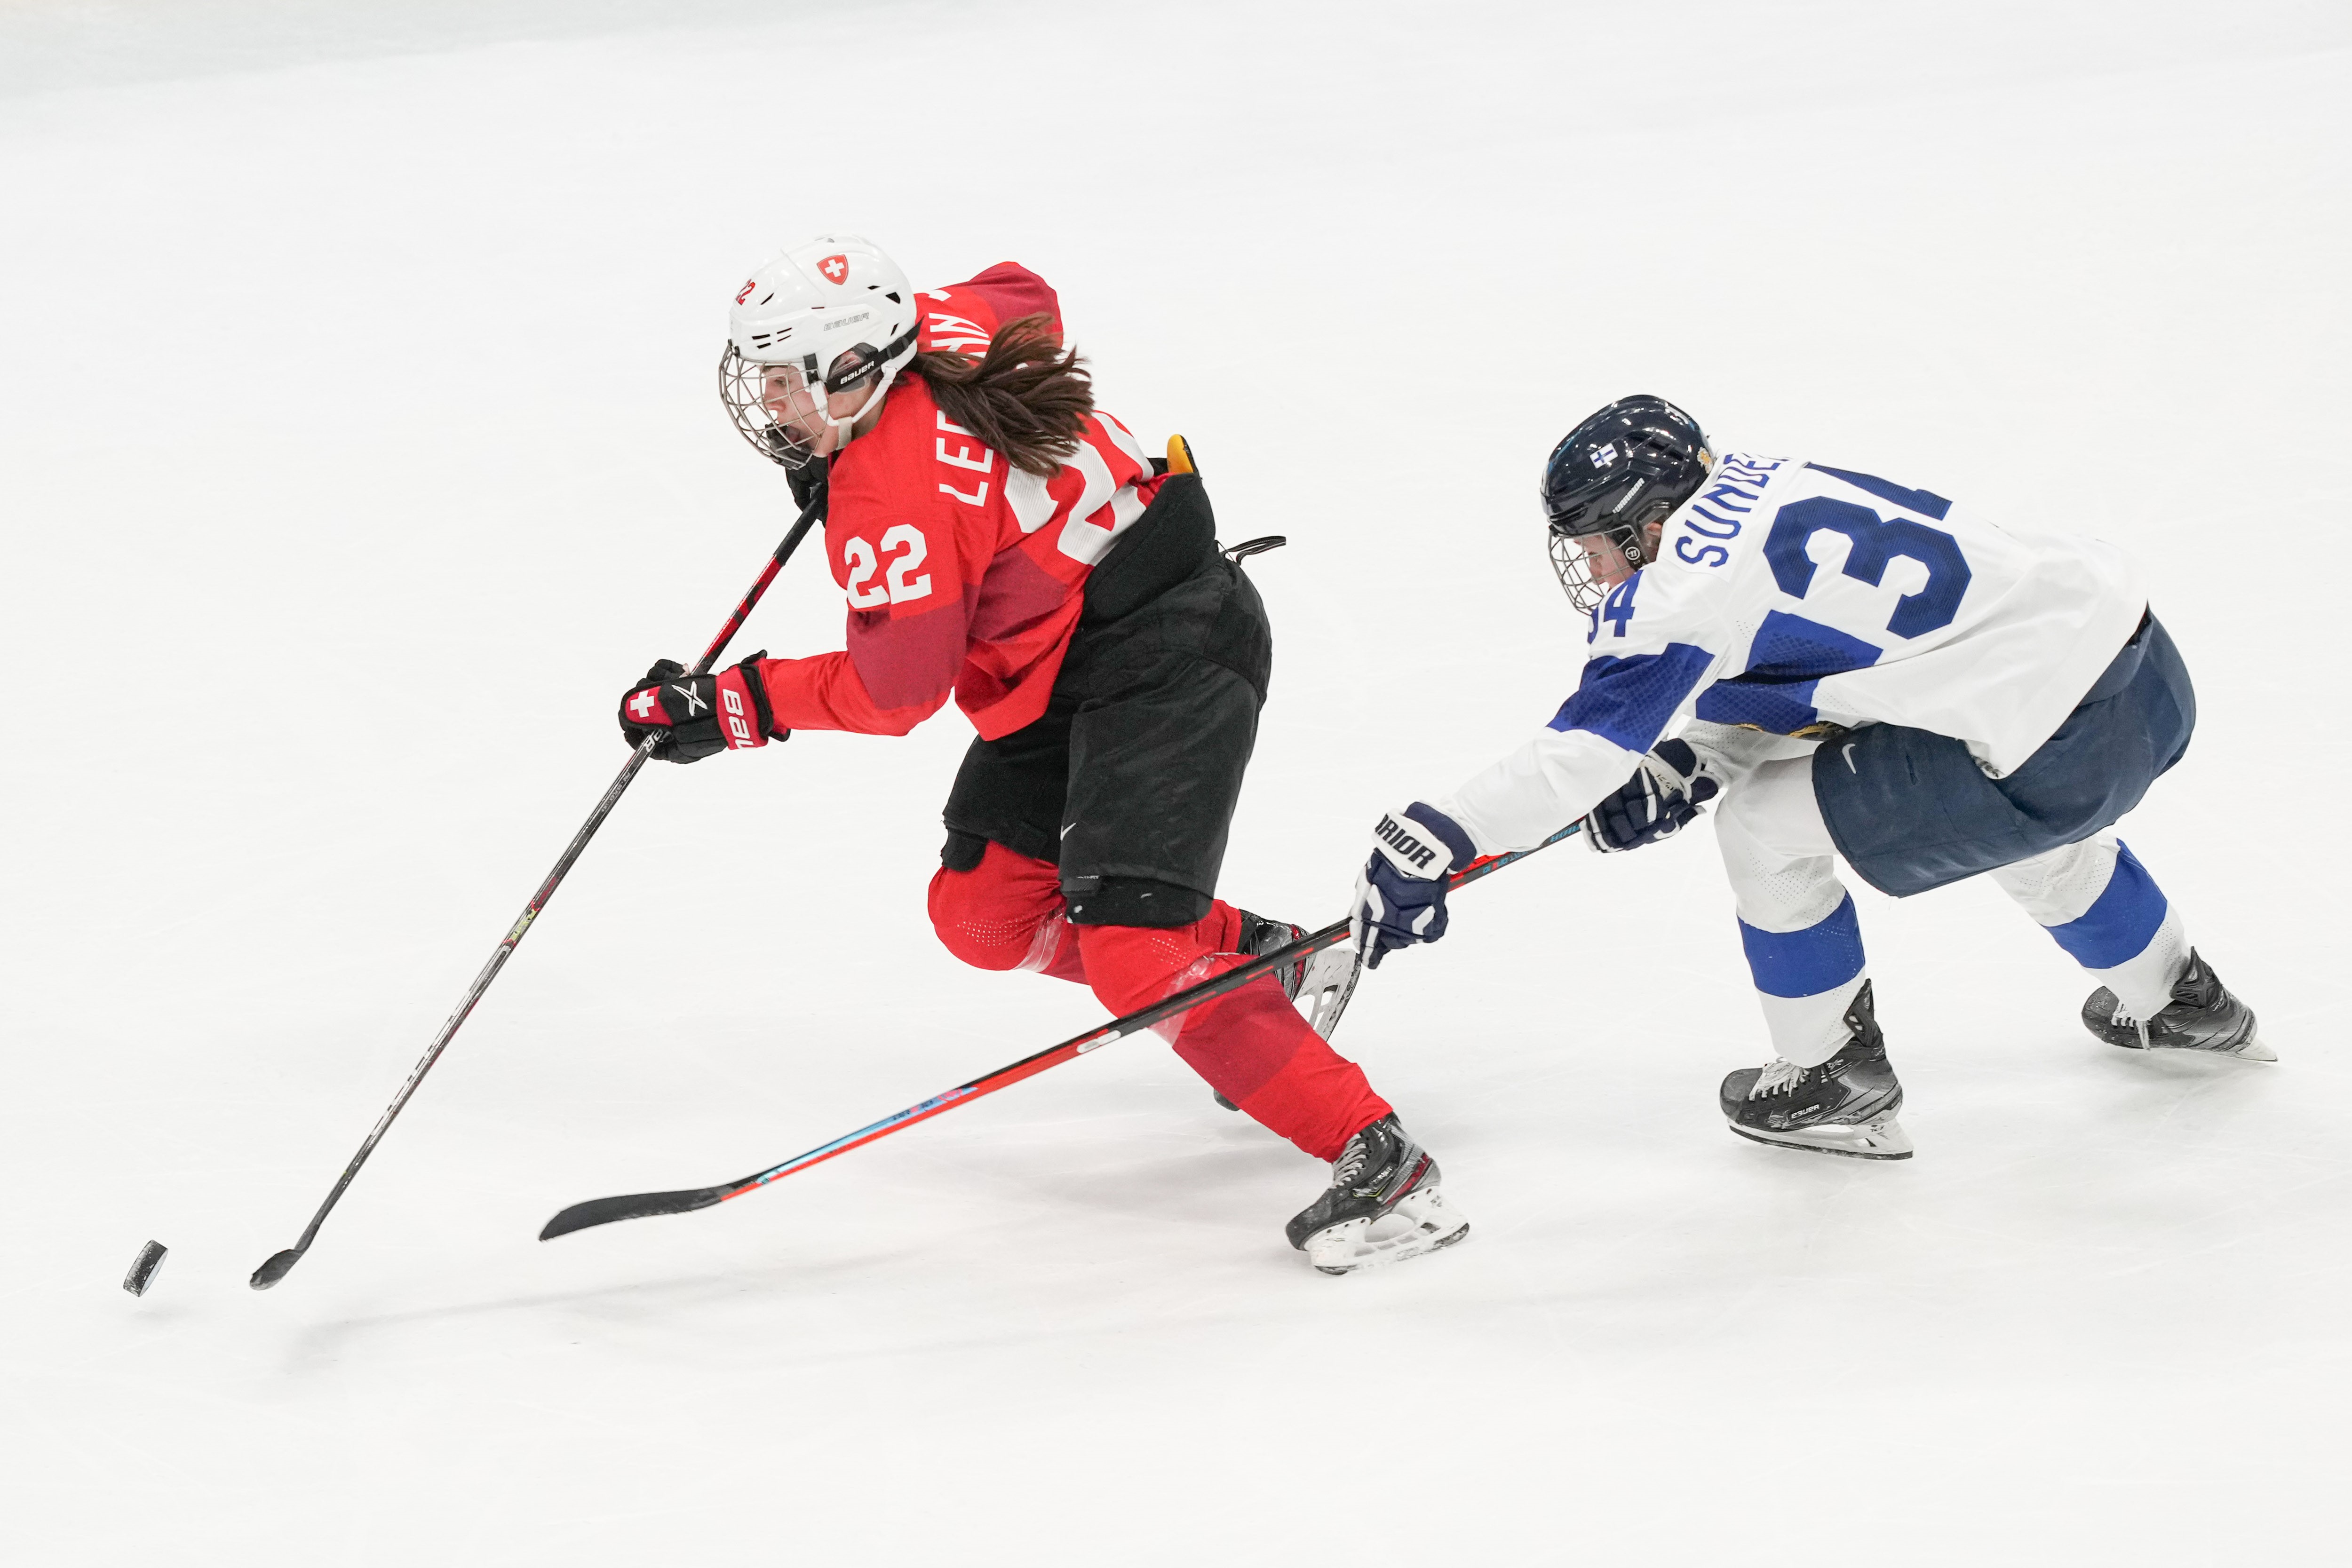 CHINA-BEIJING-OLYMPIC WINTER GAMES-ICE HOCKEY-WOMEN’S PRELIMINARY-SWITZERLAND VS FINLAND (CN)